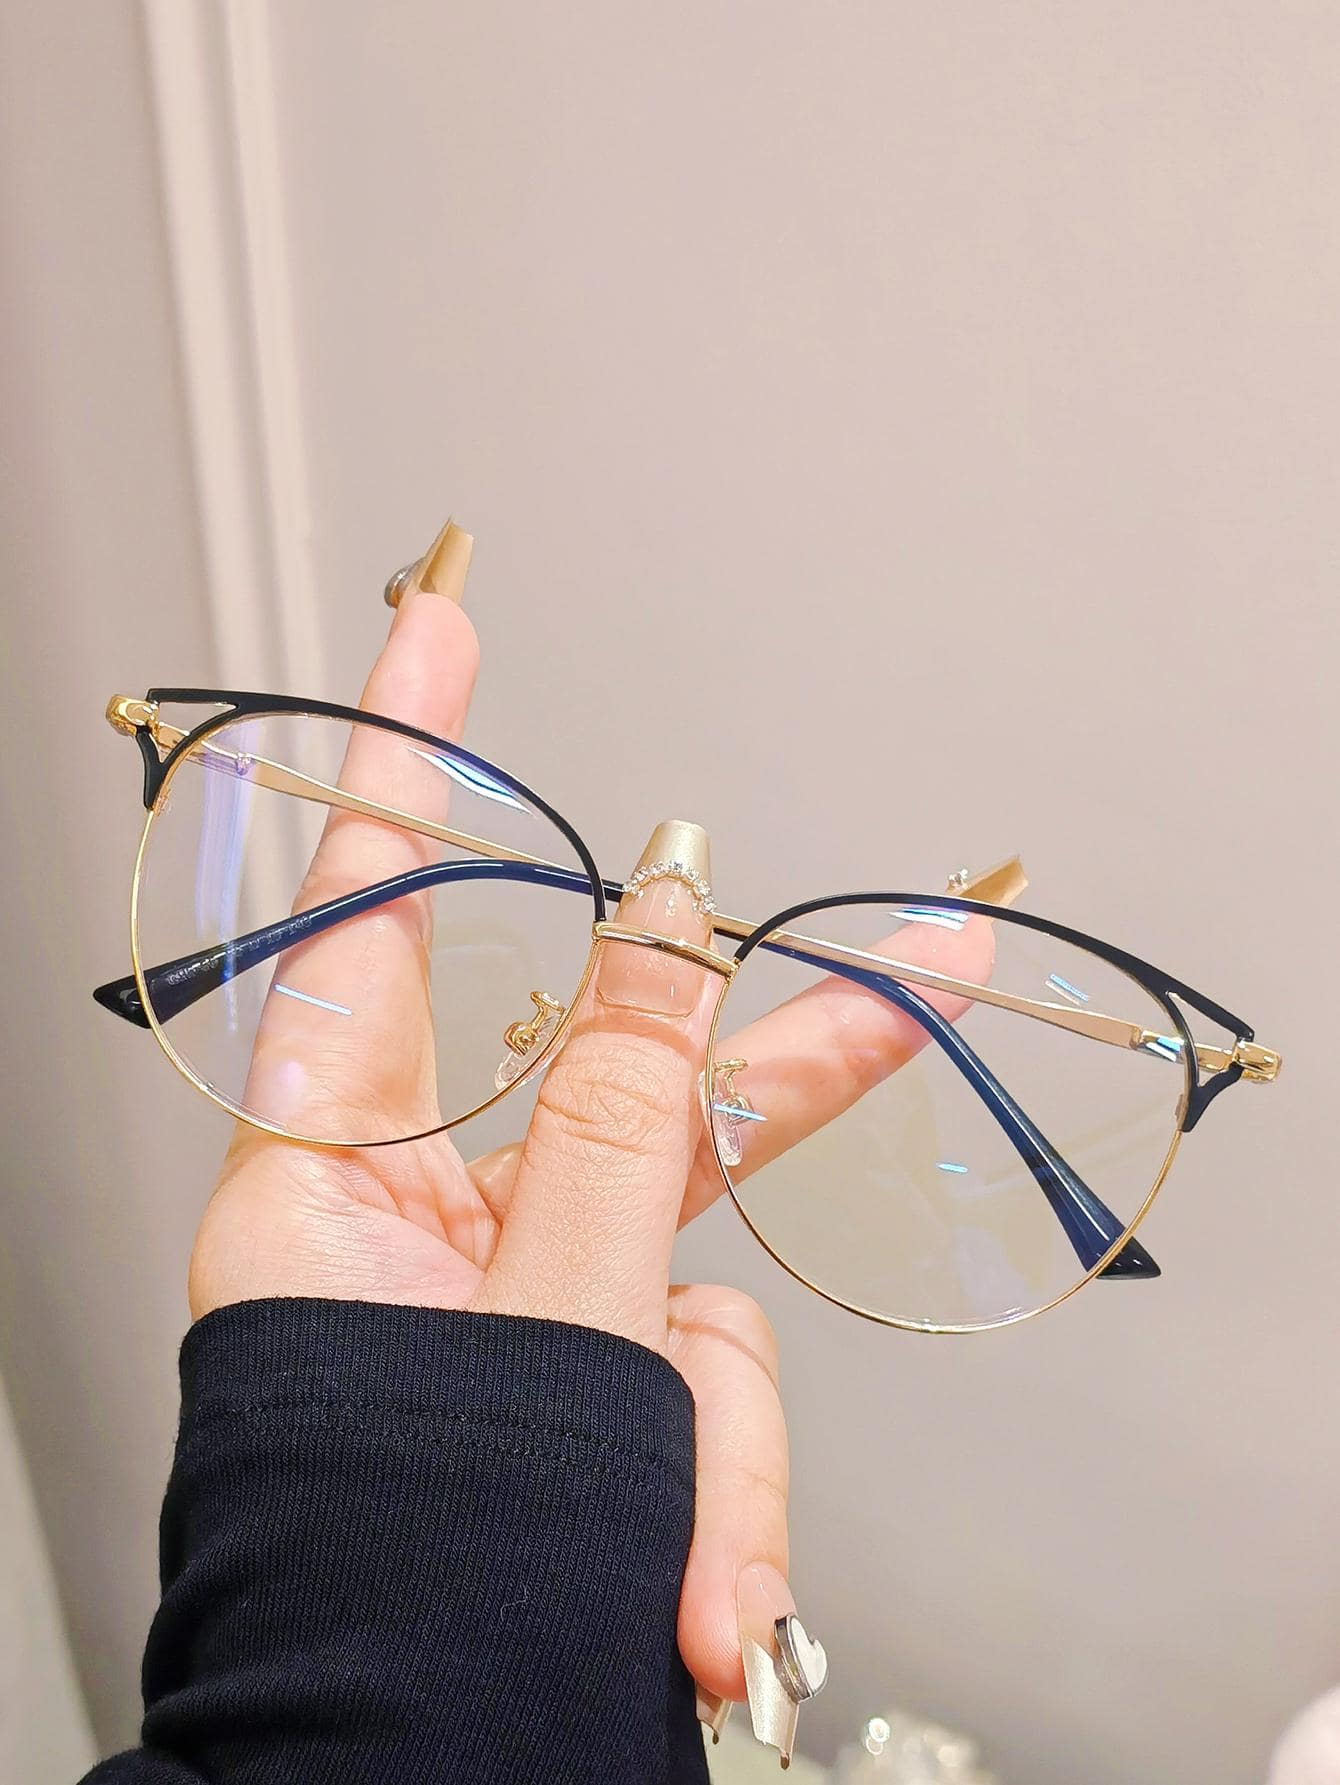 1 шт. женские легкие металлические очки в круглой оправе с блокировкой синего света и разноцветным дизайном с полыми бровями (доступен по рецепту)